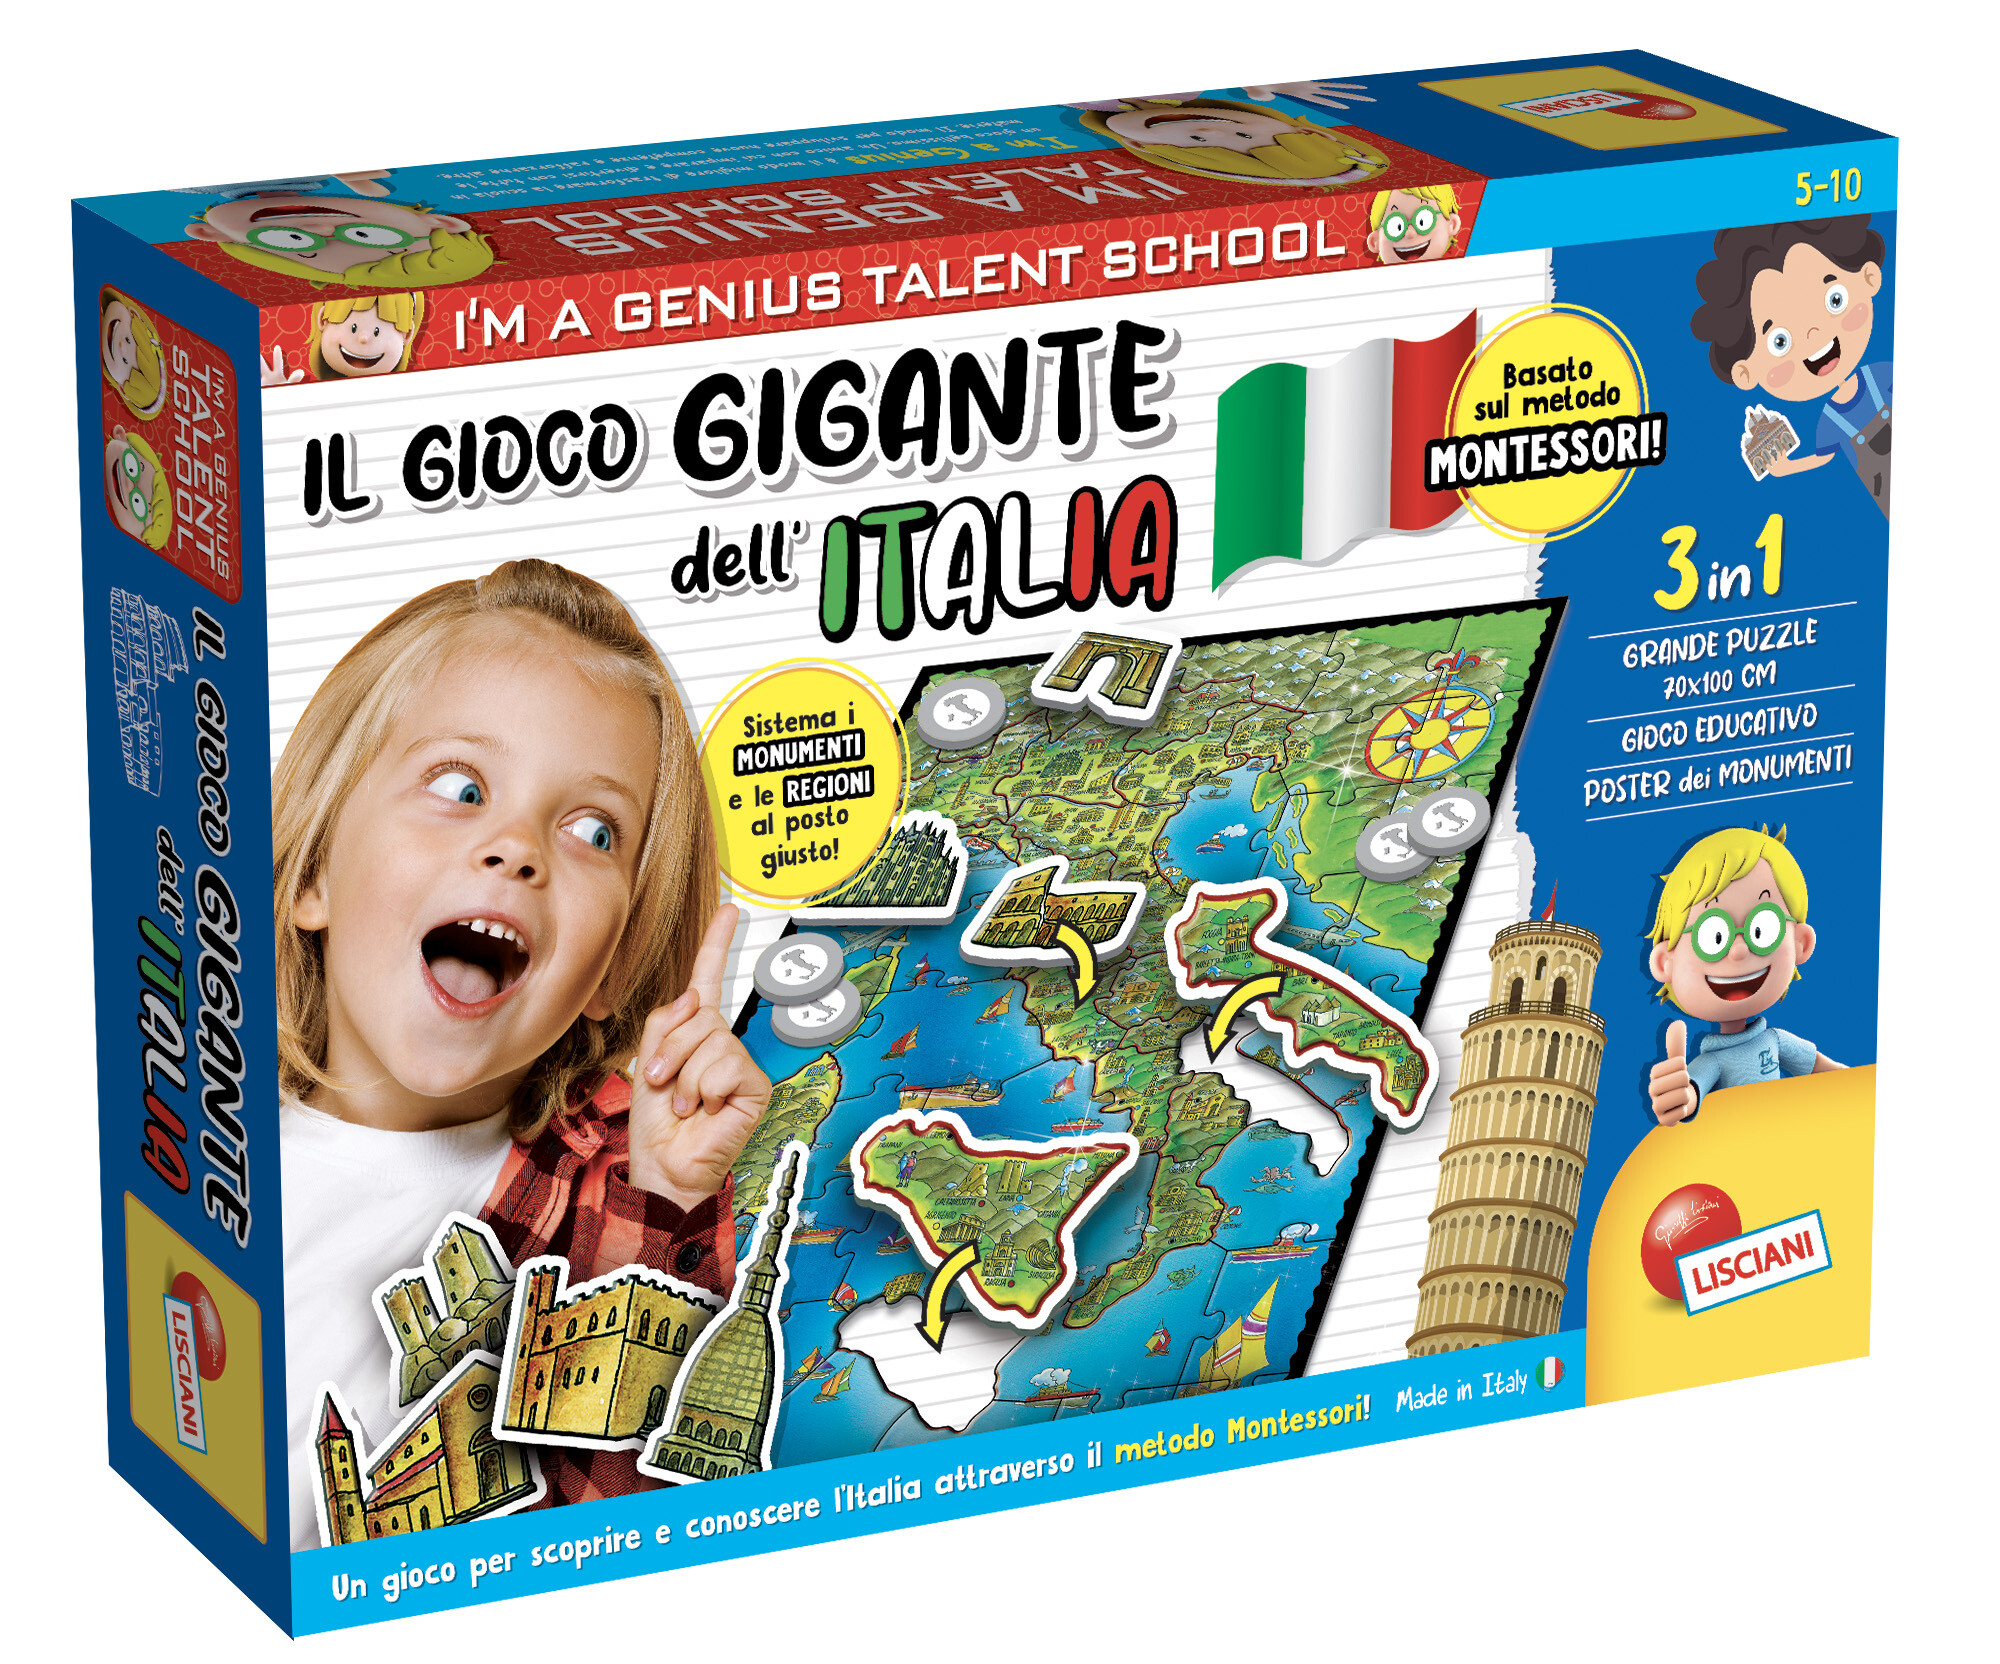 I'm a genius il gioco gigante dell'italia montessori - LISCIANI